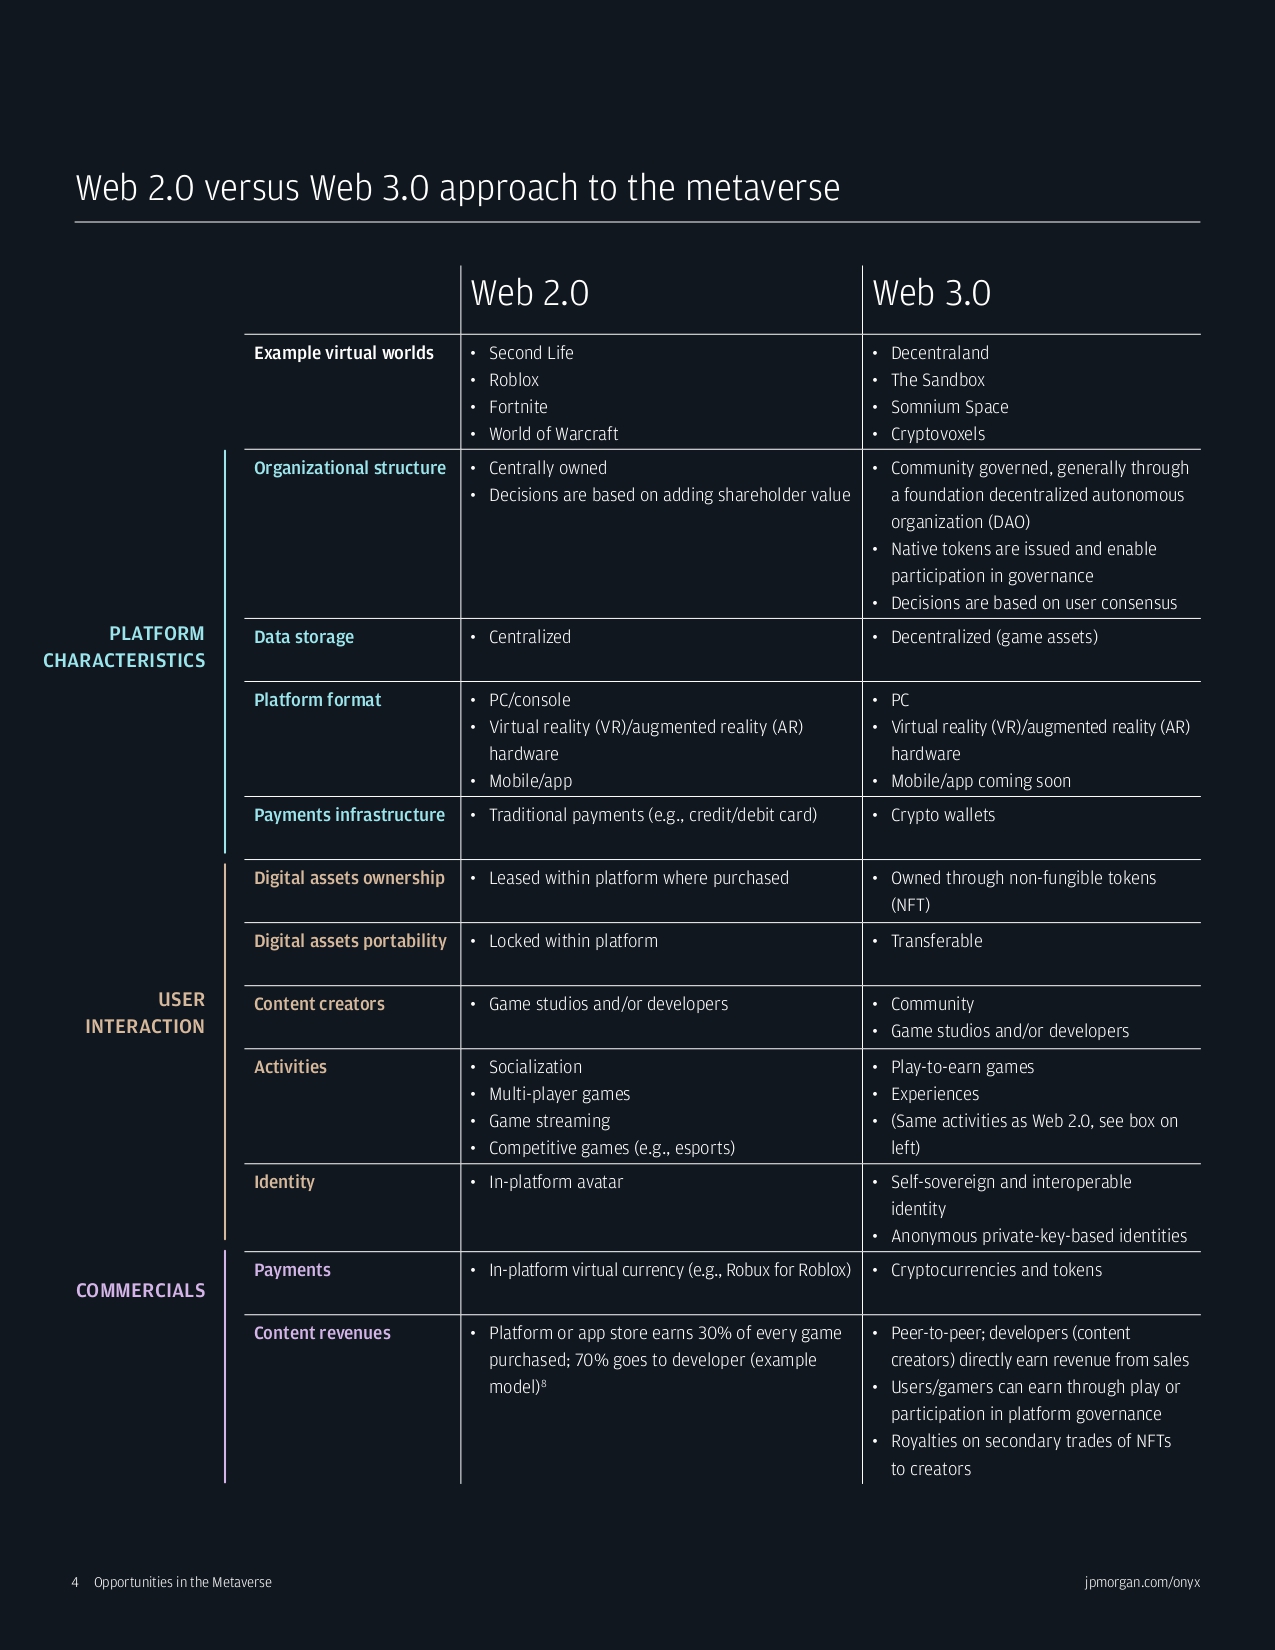 Web 2.0 characteristics vs Web 3.0 characteristics